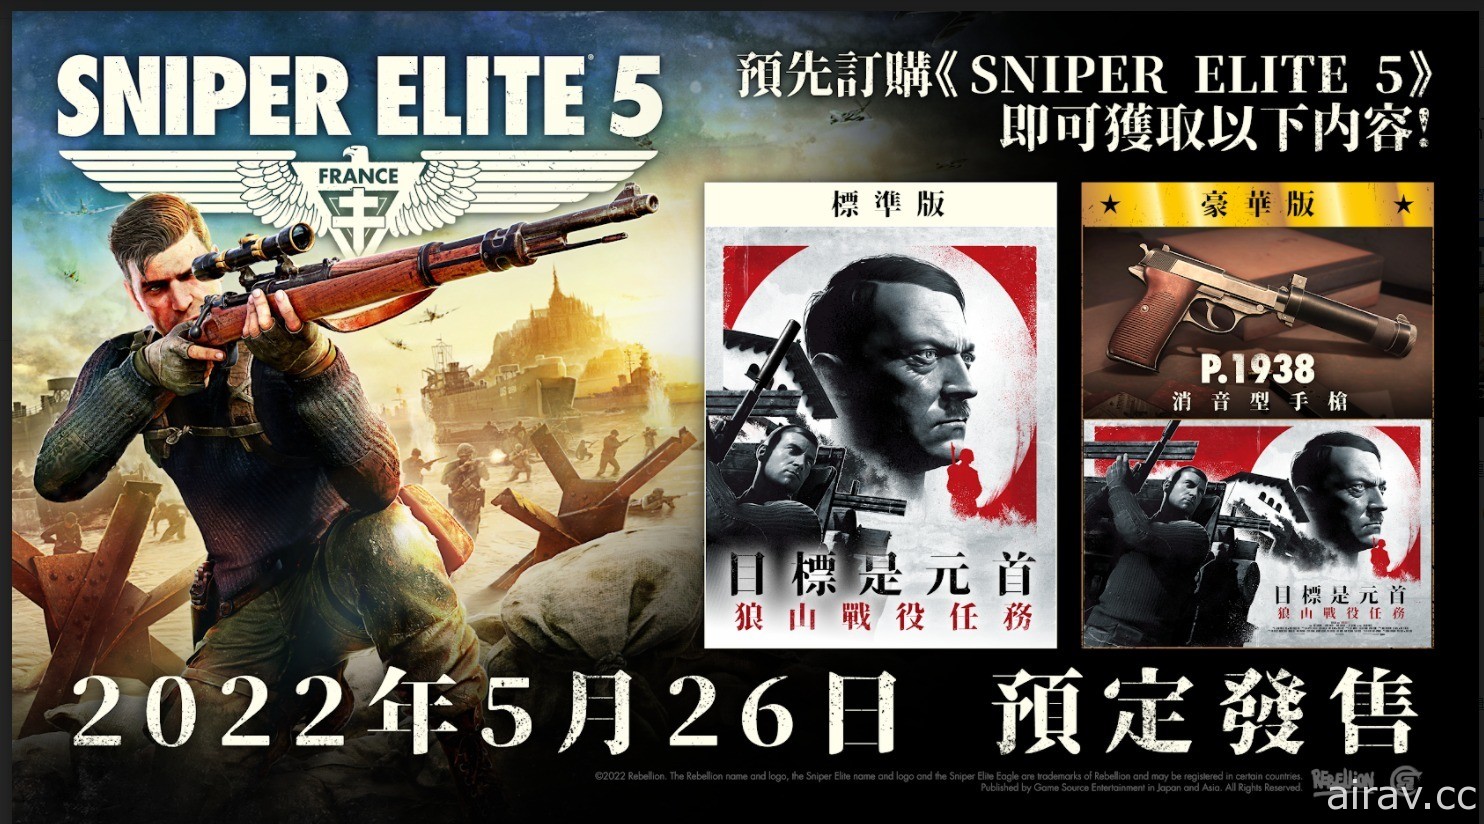 《狙击精英 5》召集战友上阵 追加亚洲地区独家限量预购特典